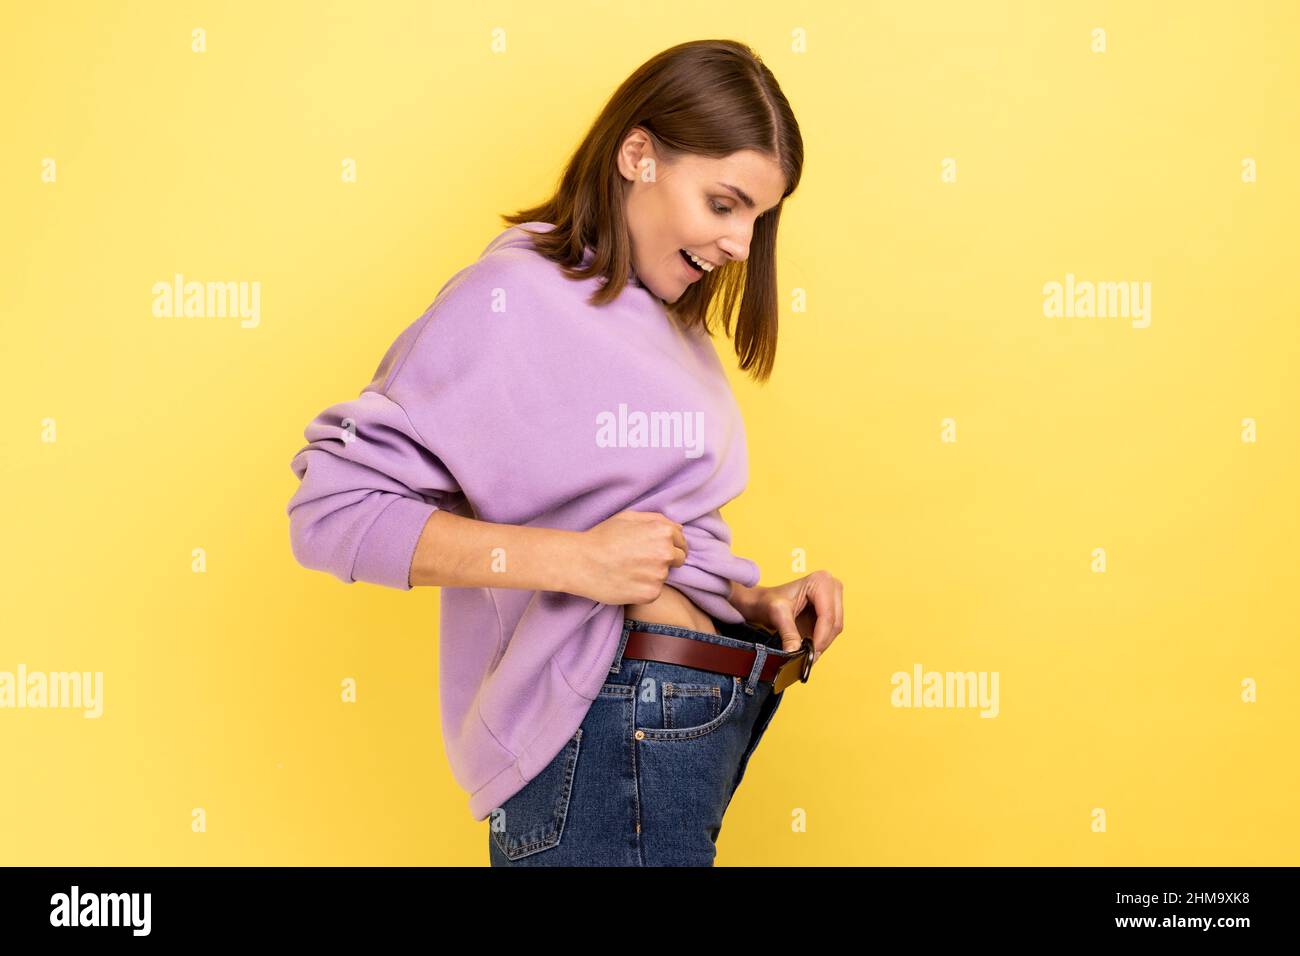 Seitenansicht der dunkelhaarigen glücklichen Frau, die erfolgreich abnimmt, Glück, Diät-Konzept zum Ausdruck bringt und einen violetten Hoodie trägt. Innenaufnahme des Studios isoliert auf gelbem Hintergrund. Stockfoto